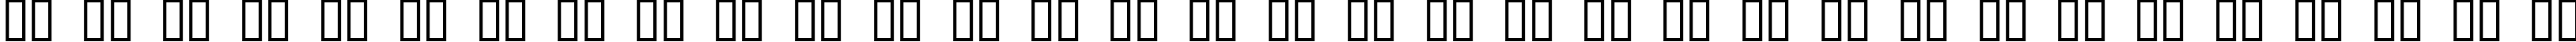 Пример написания русского алфавита шрифтом Zeppelin 2